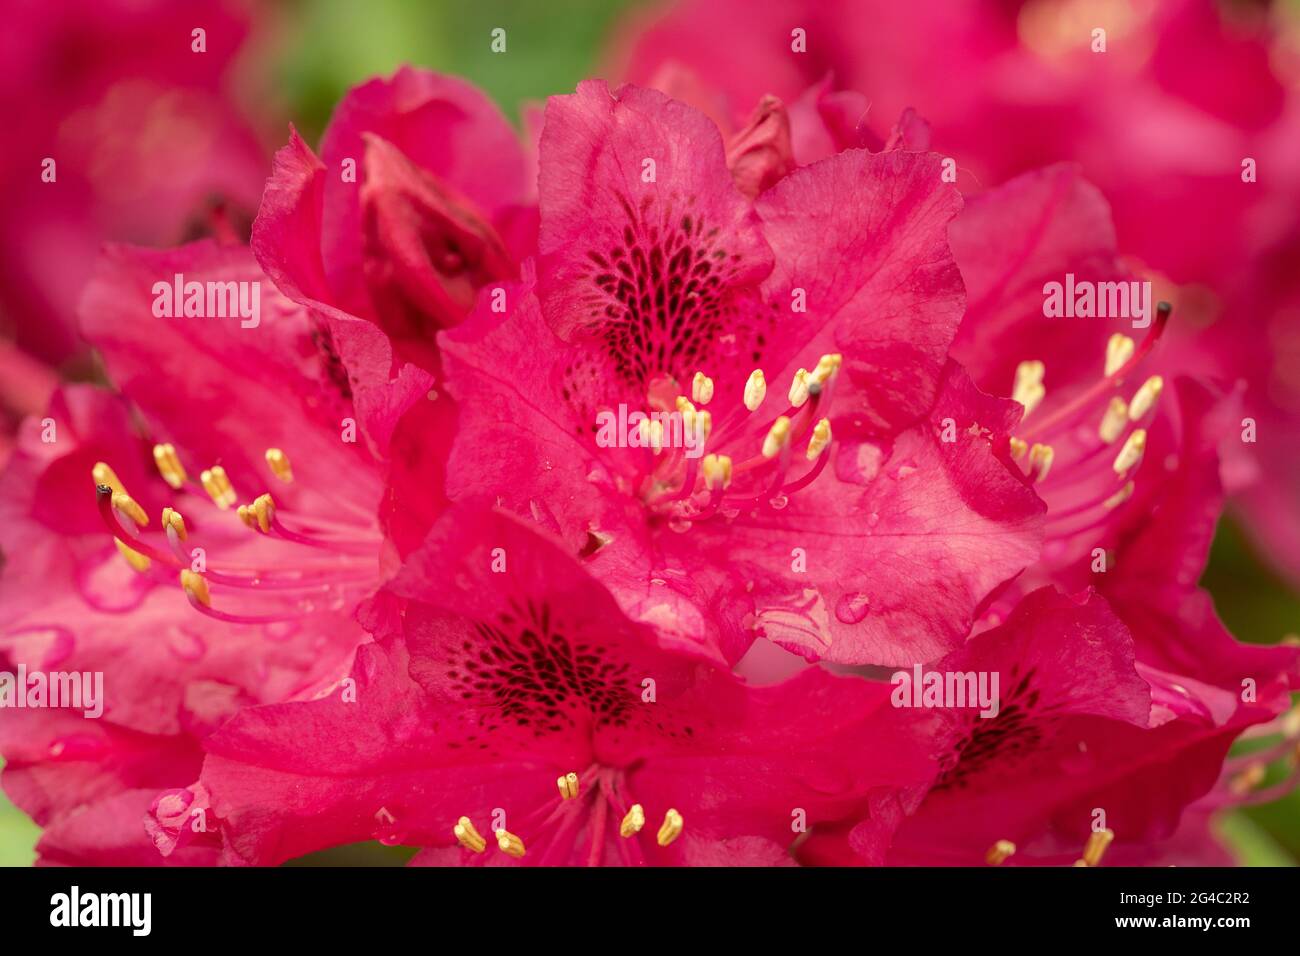 Rhododendron ‘Marie Forte’ blüht mit Regentropfen. Gruppen von trichterförmigen tiefrot-roten Blüten mit dunklen Markierungen am Hals jeder Blume Stockfoto